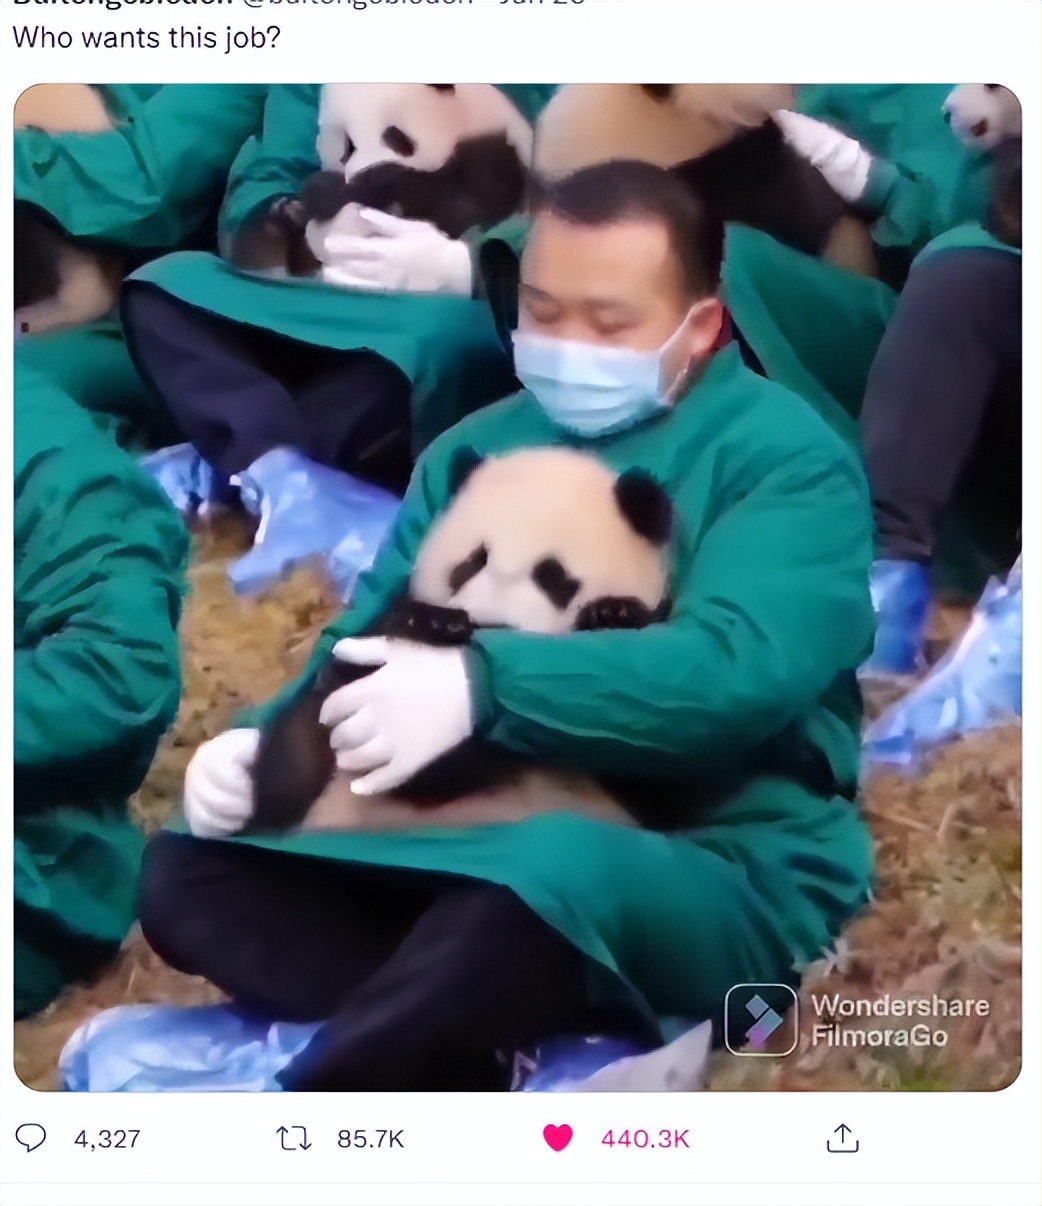 中国招聘抱熊猫的职位若干，可有1000多万外国网友想应聘，怎么办